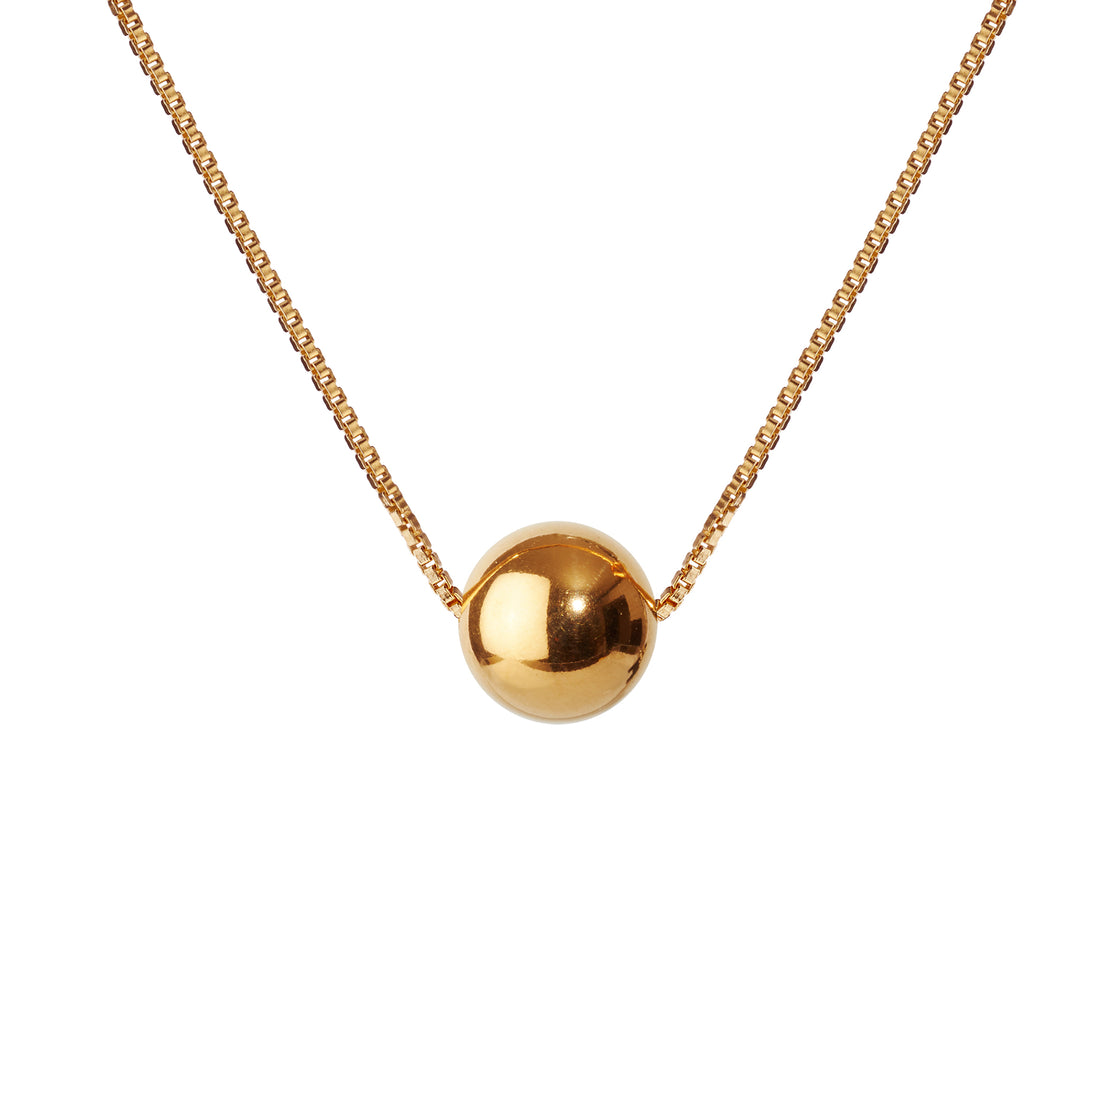 GLOW halskæde · GOLD · SCHERNING øreringe · Håndlavede Danske smykker